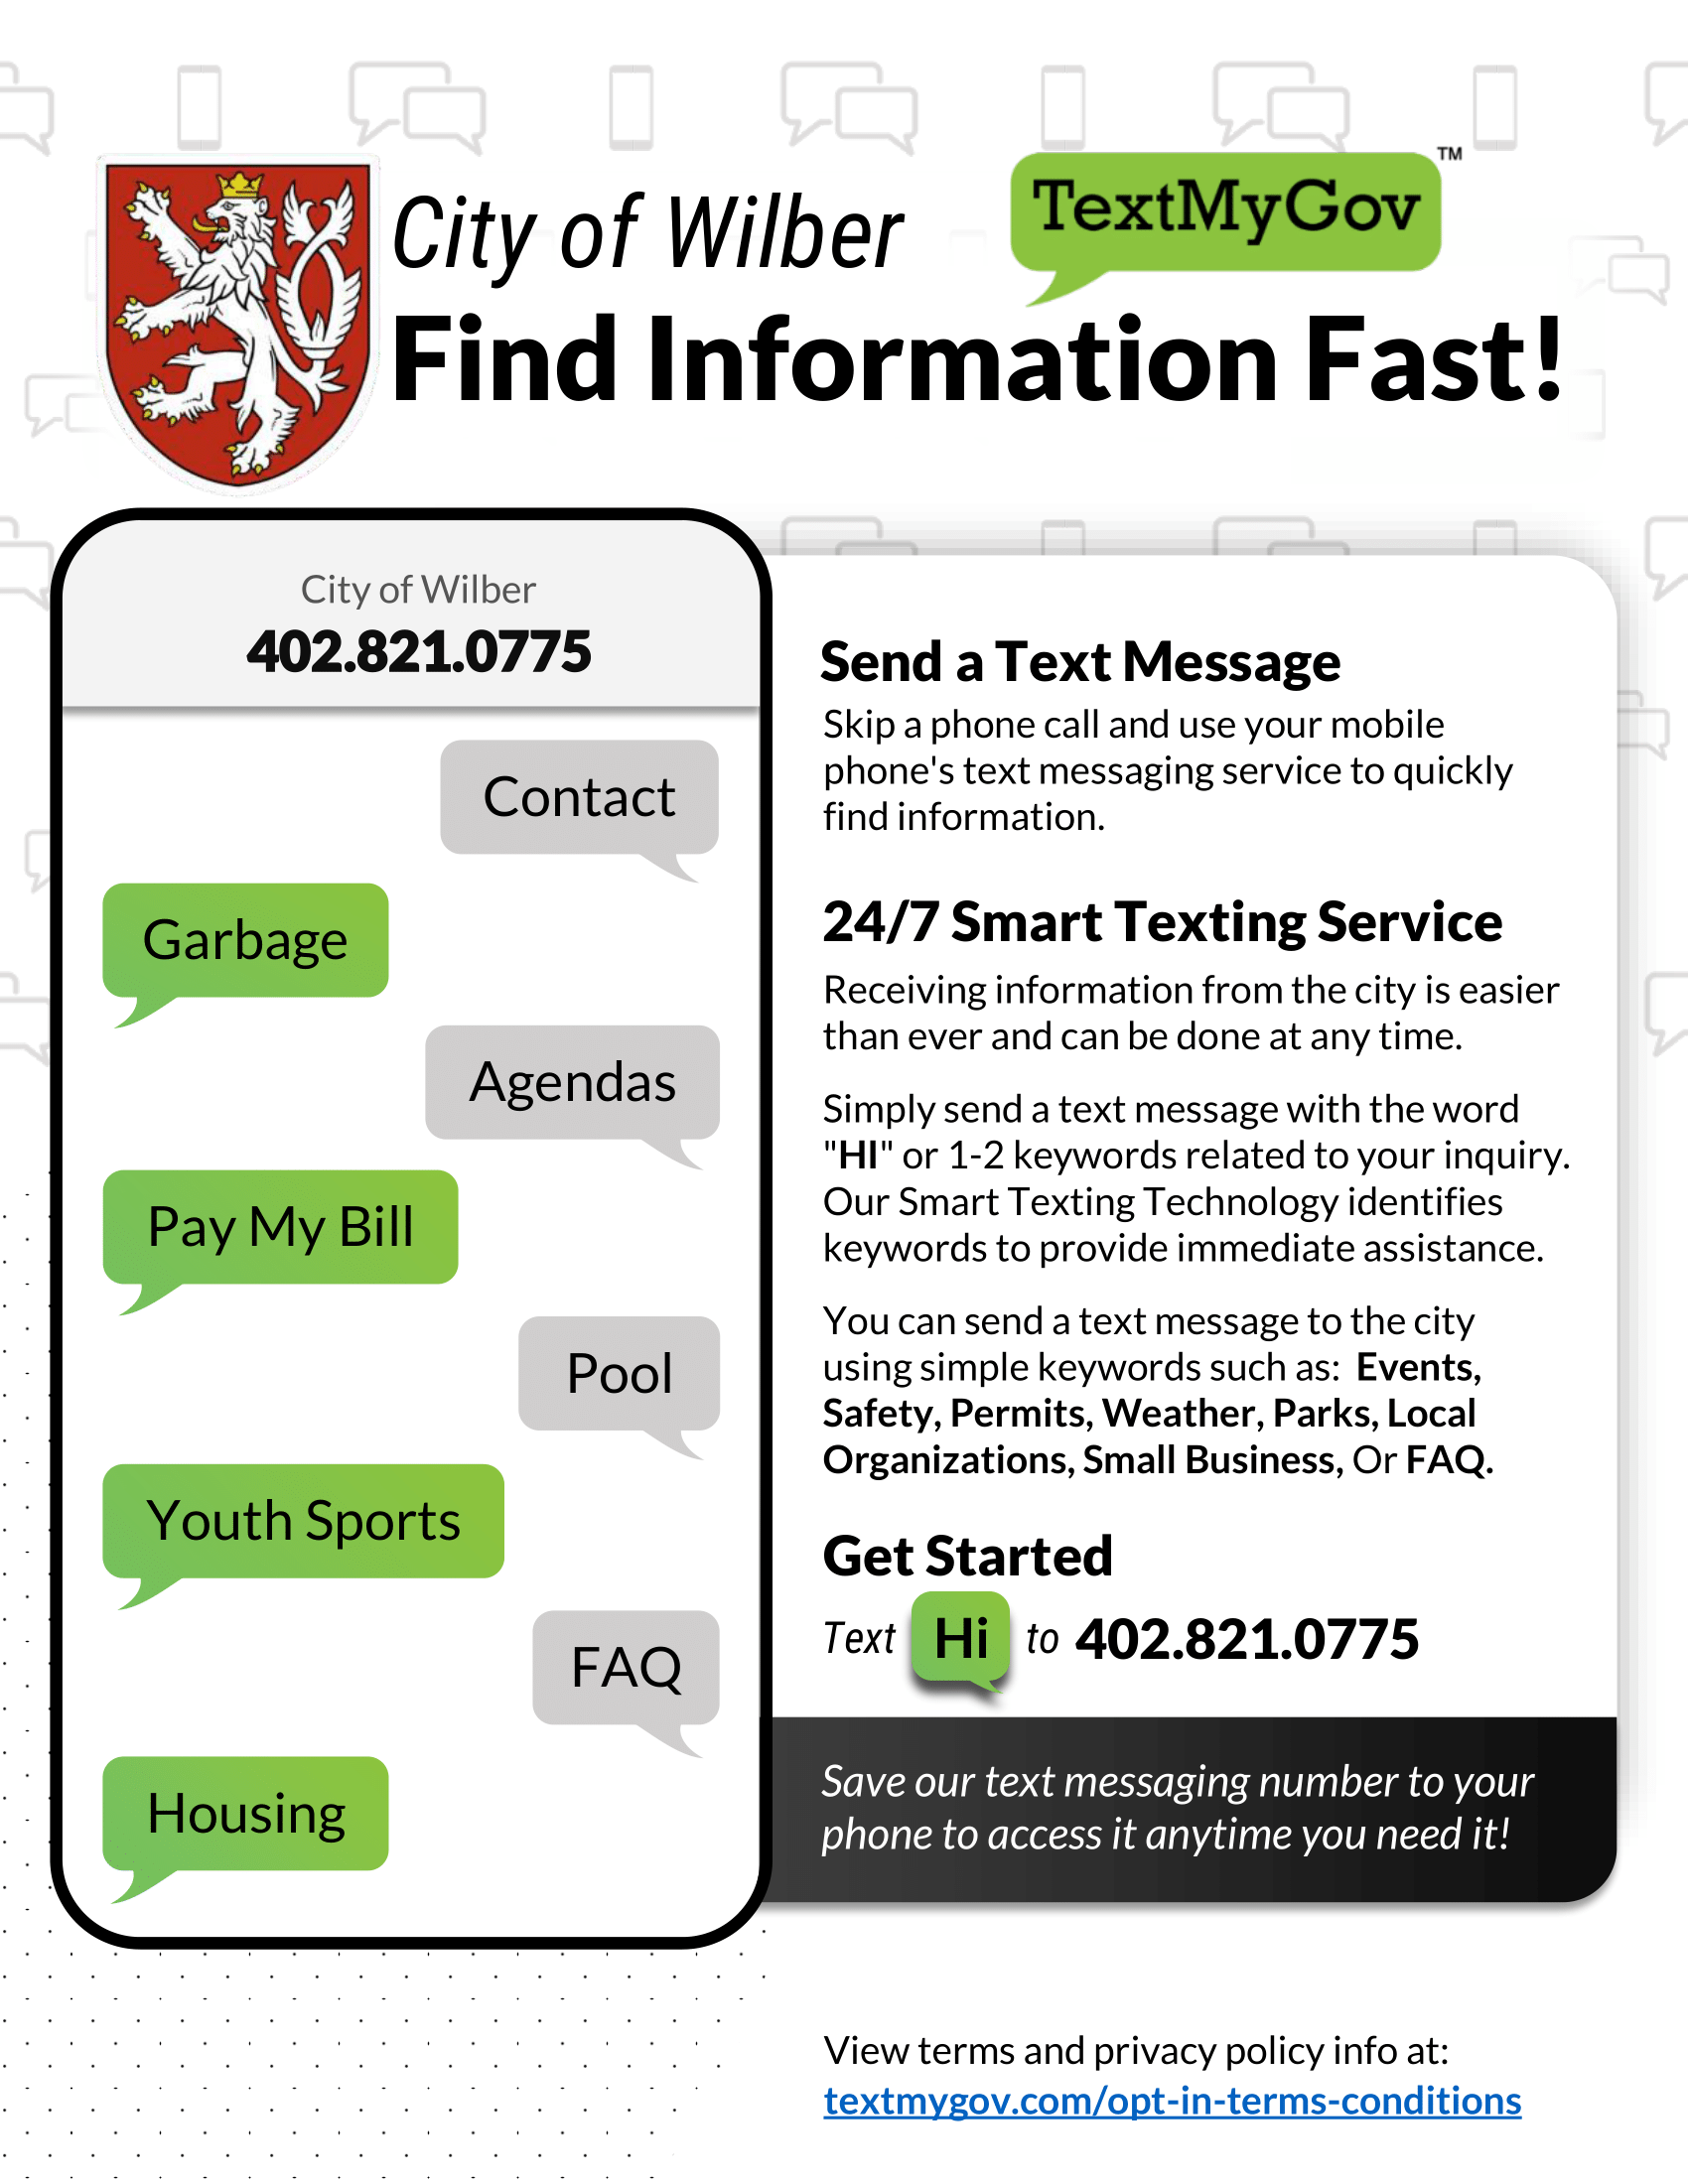 TextMyGov Informational Flyer